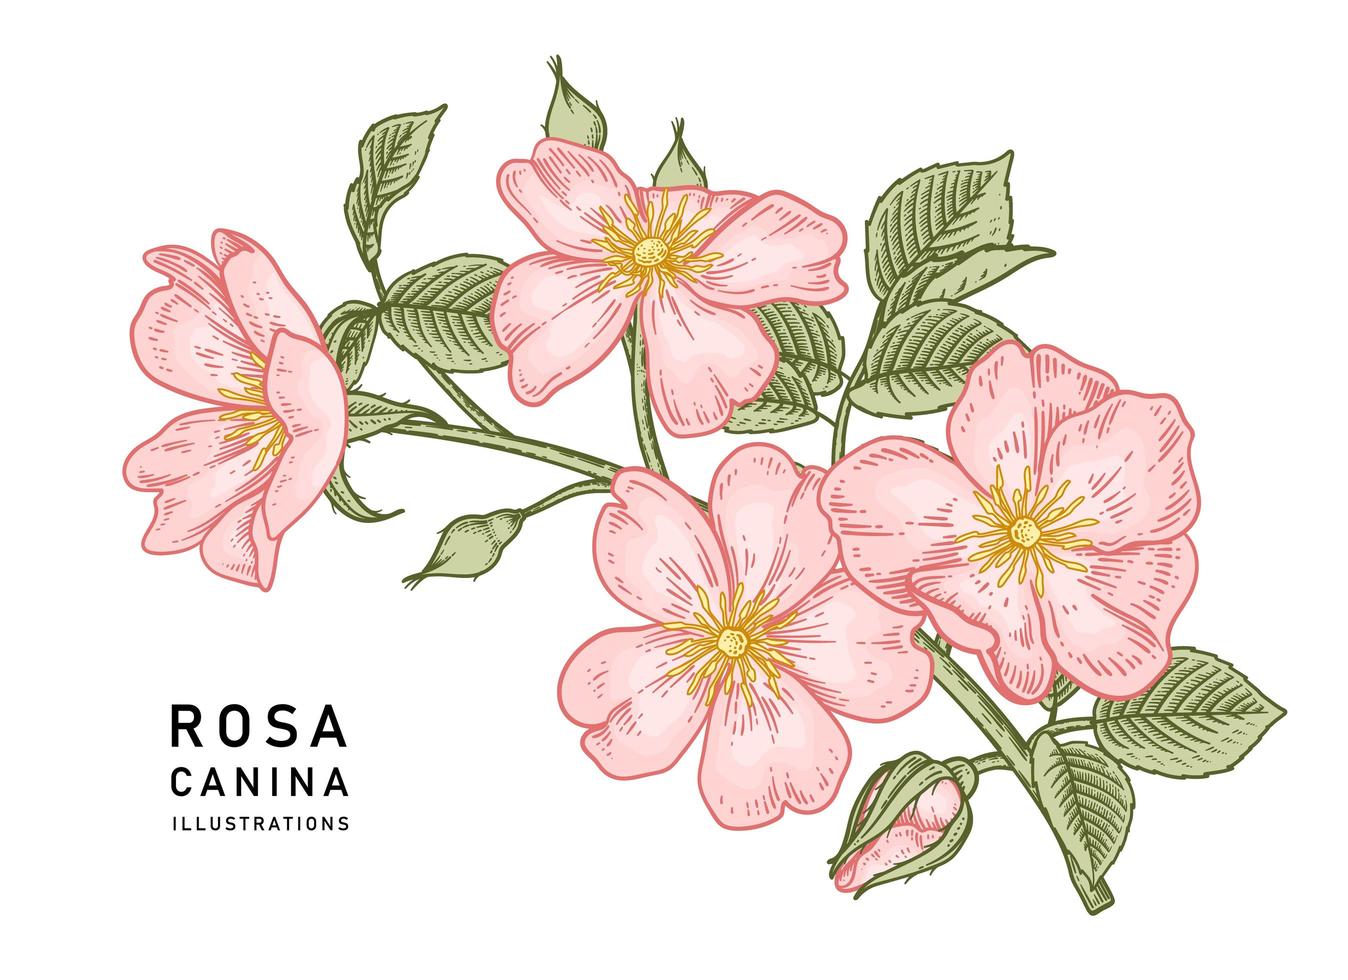 tak van roze hondsroos of rosa canina met bloem en bladeren hand getrokken botanische illustraties vector